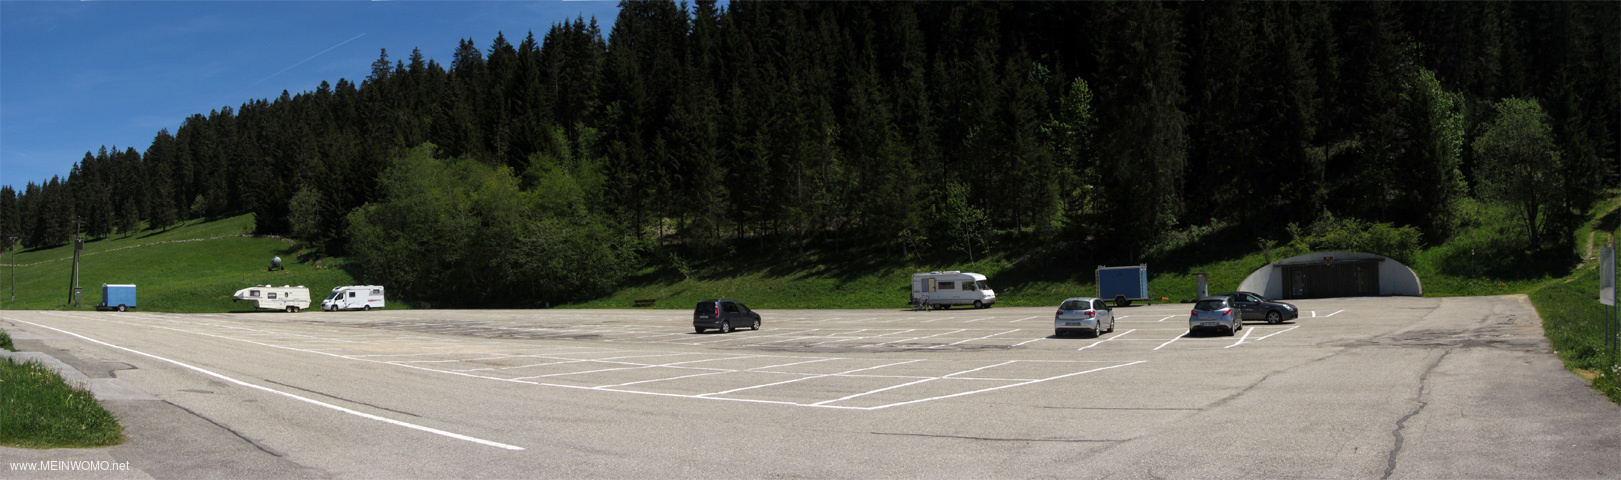  De grote parkeerplaats voor autos en campers in de buurt van het Lac des Taillres in La Brvine.. ...